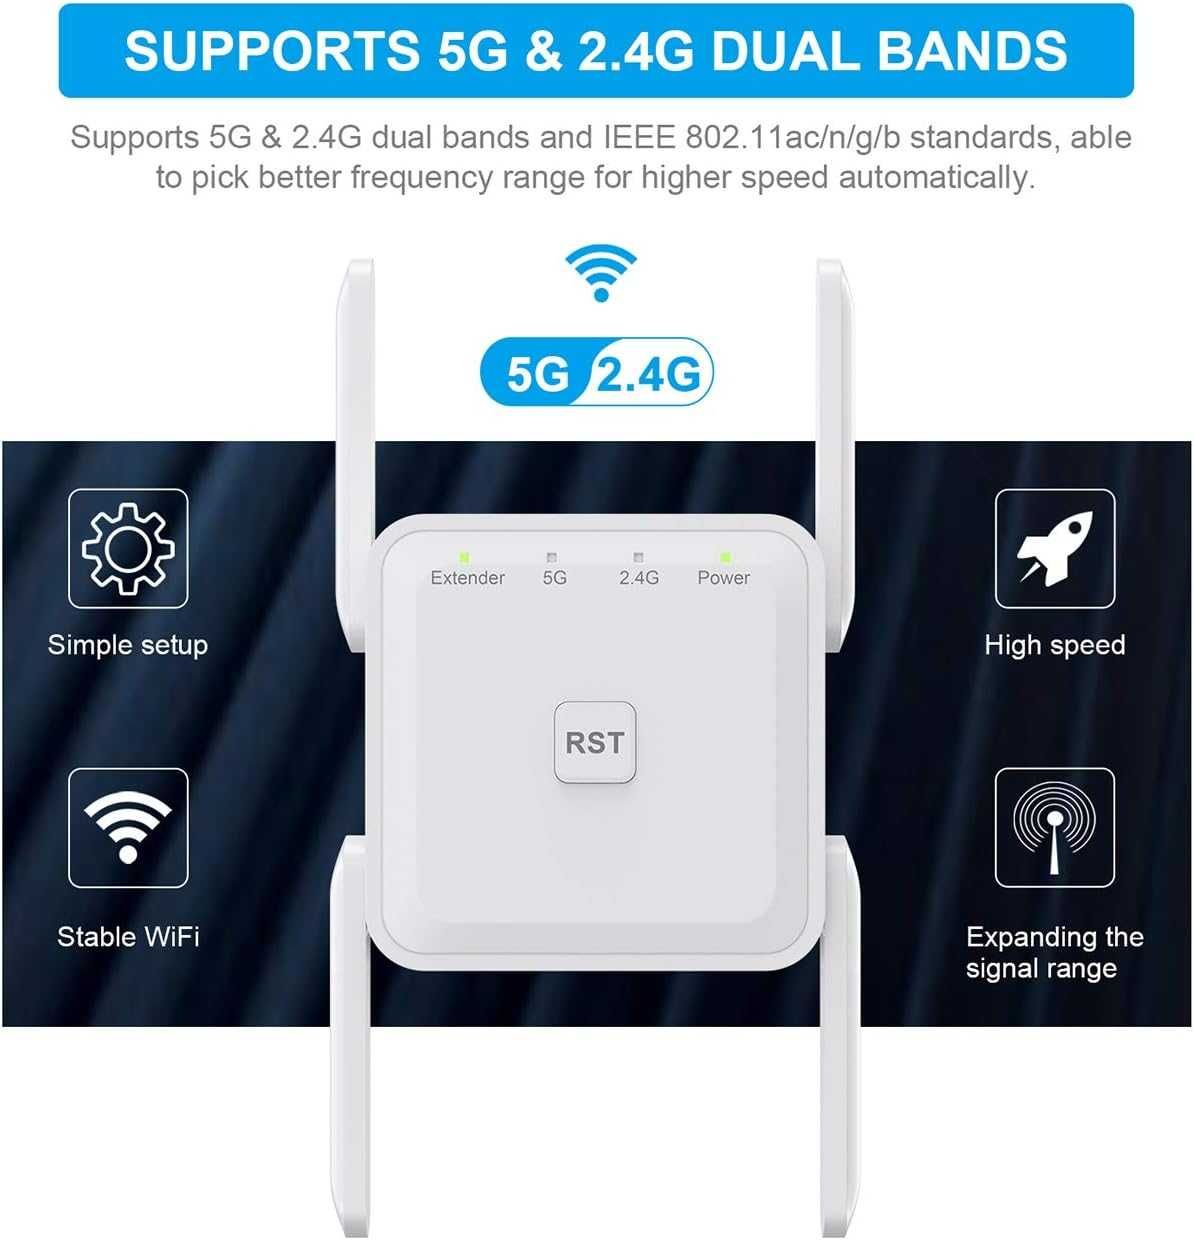 WiFi усилвател на сигнала 1200Mbps 2.4&5GHz двулентов безжичен WiFi